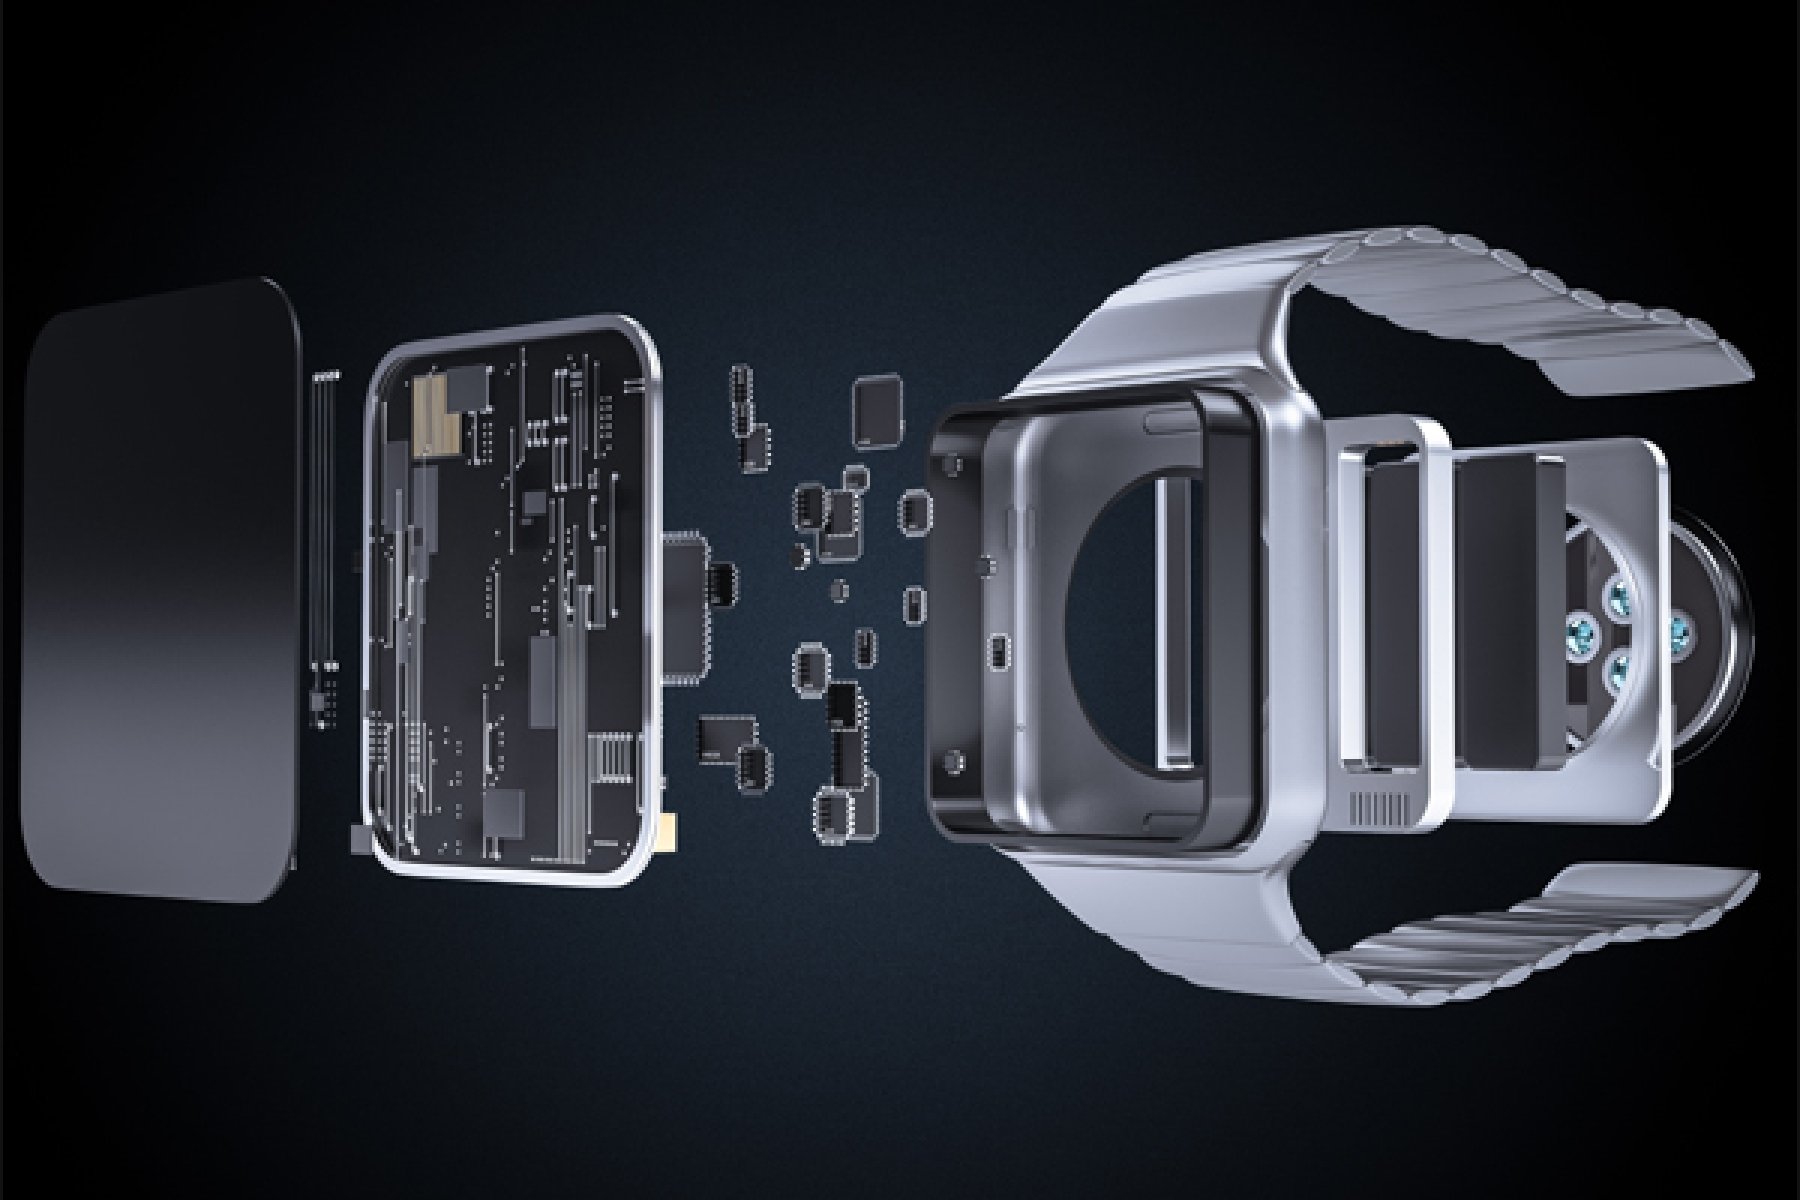 Dymax 9201-W Klebstoff für tragbare Technologie, der für die Montage von tragbaren Verbrauchergeräten wie Smartwatches verwendet wird